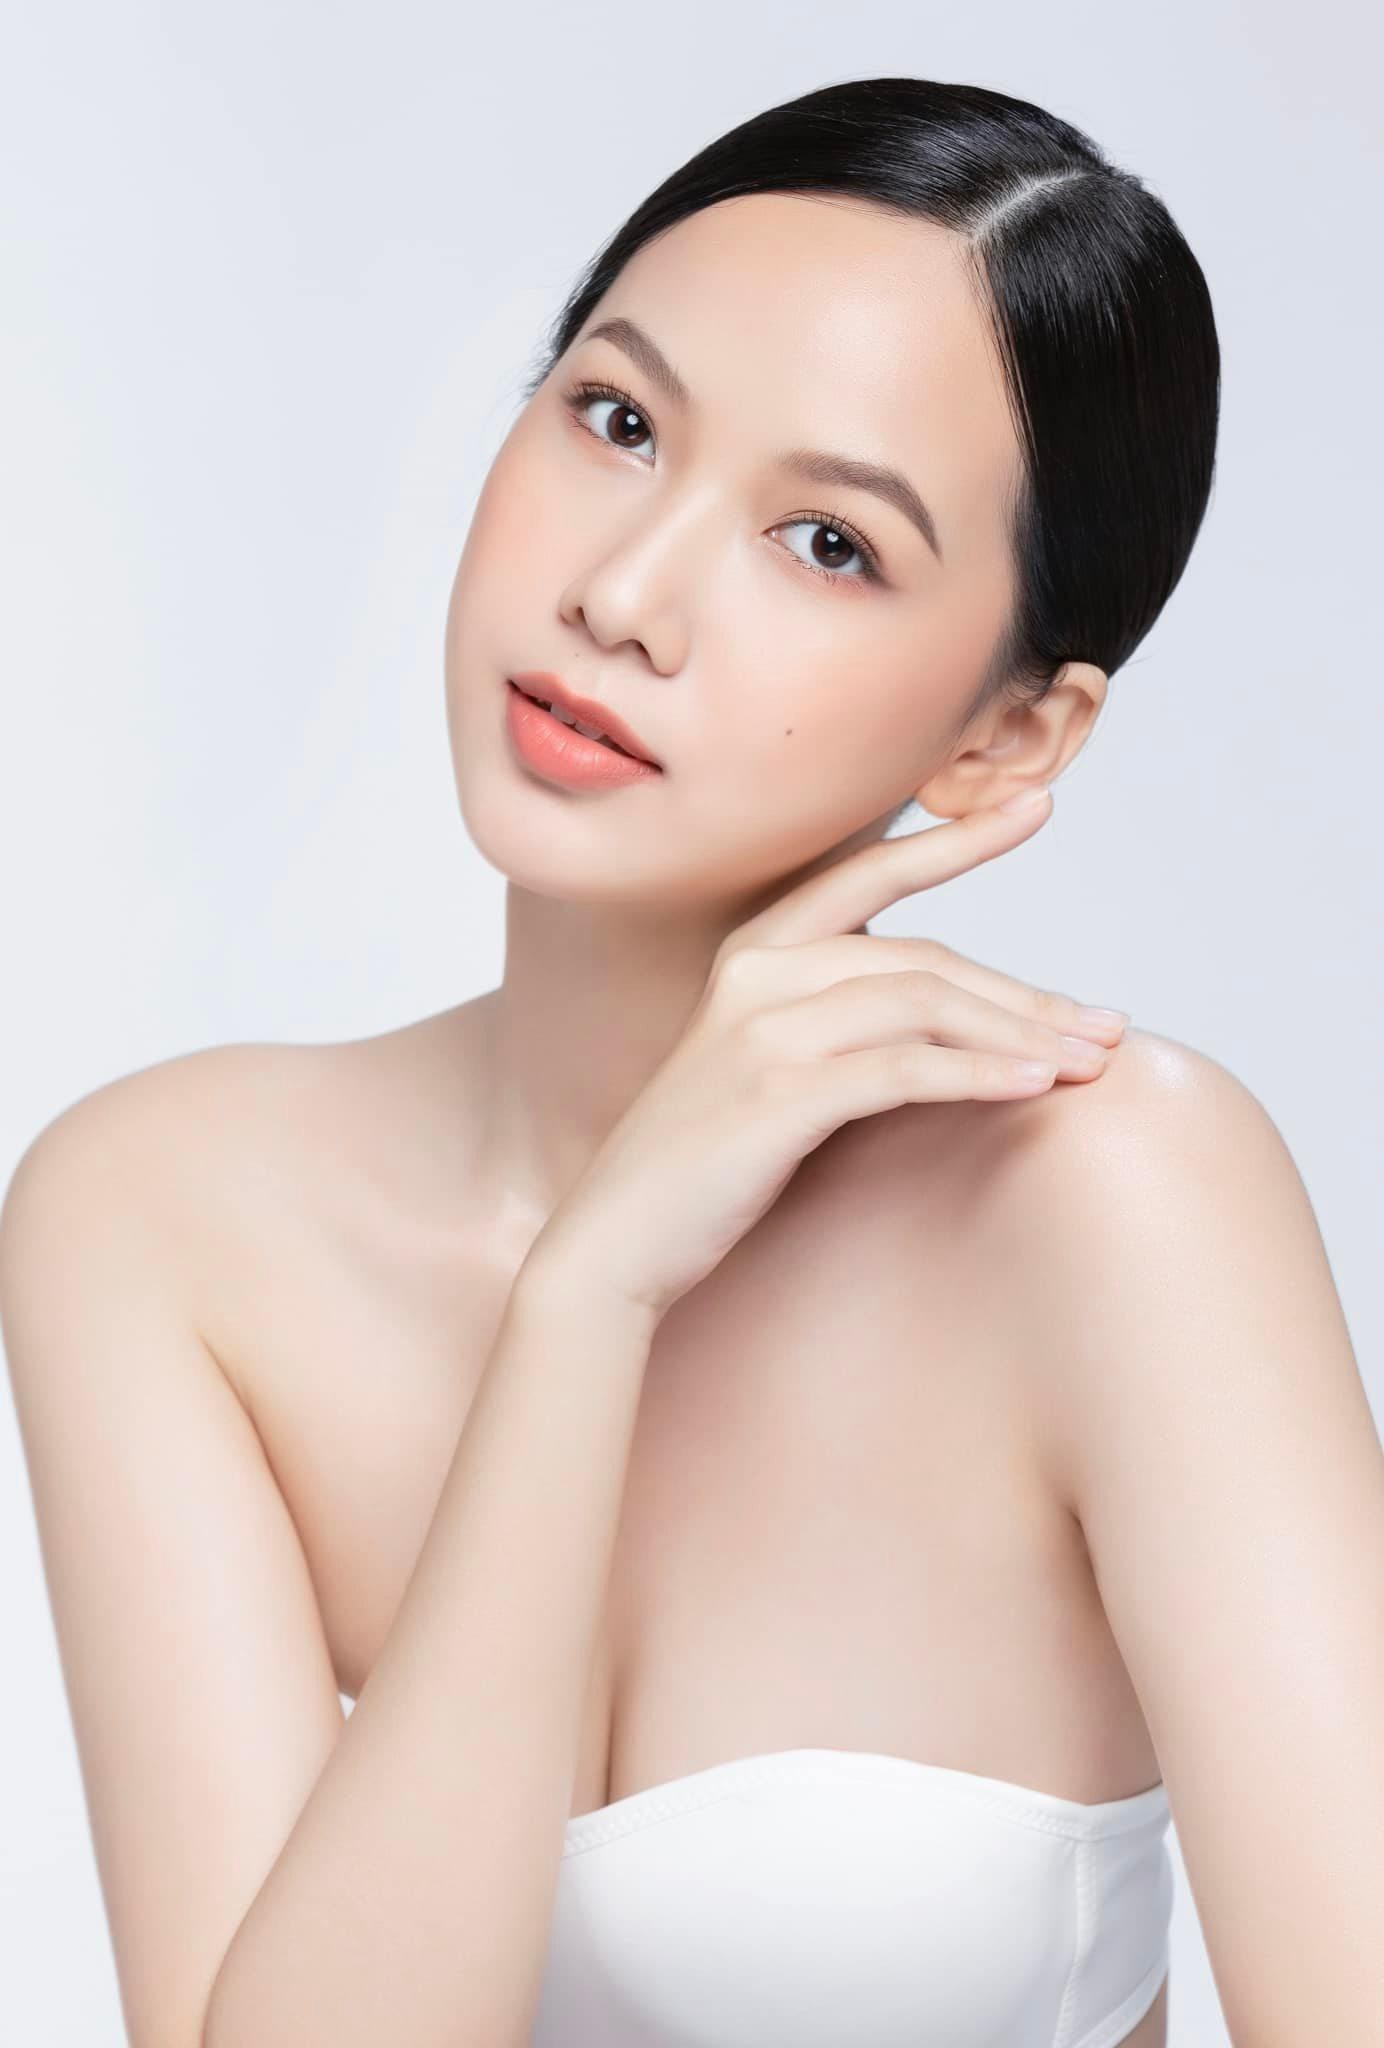 Mỹ nhân có làn da đẹp nhất Hoa hậu Việt Nam 2020 càng nhìn càng mê đắm